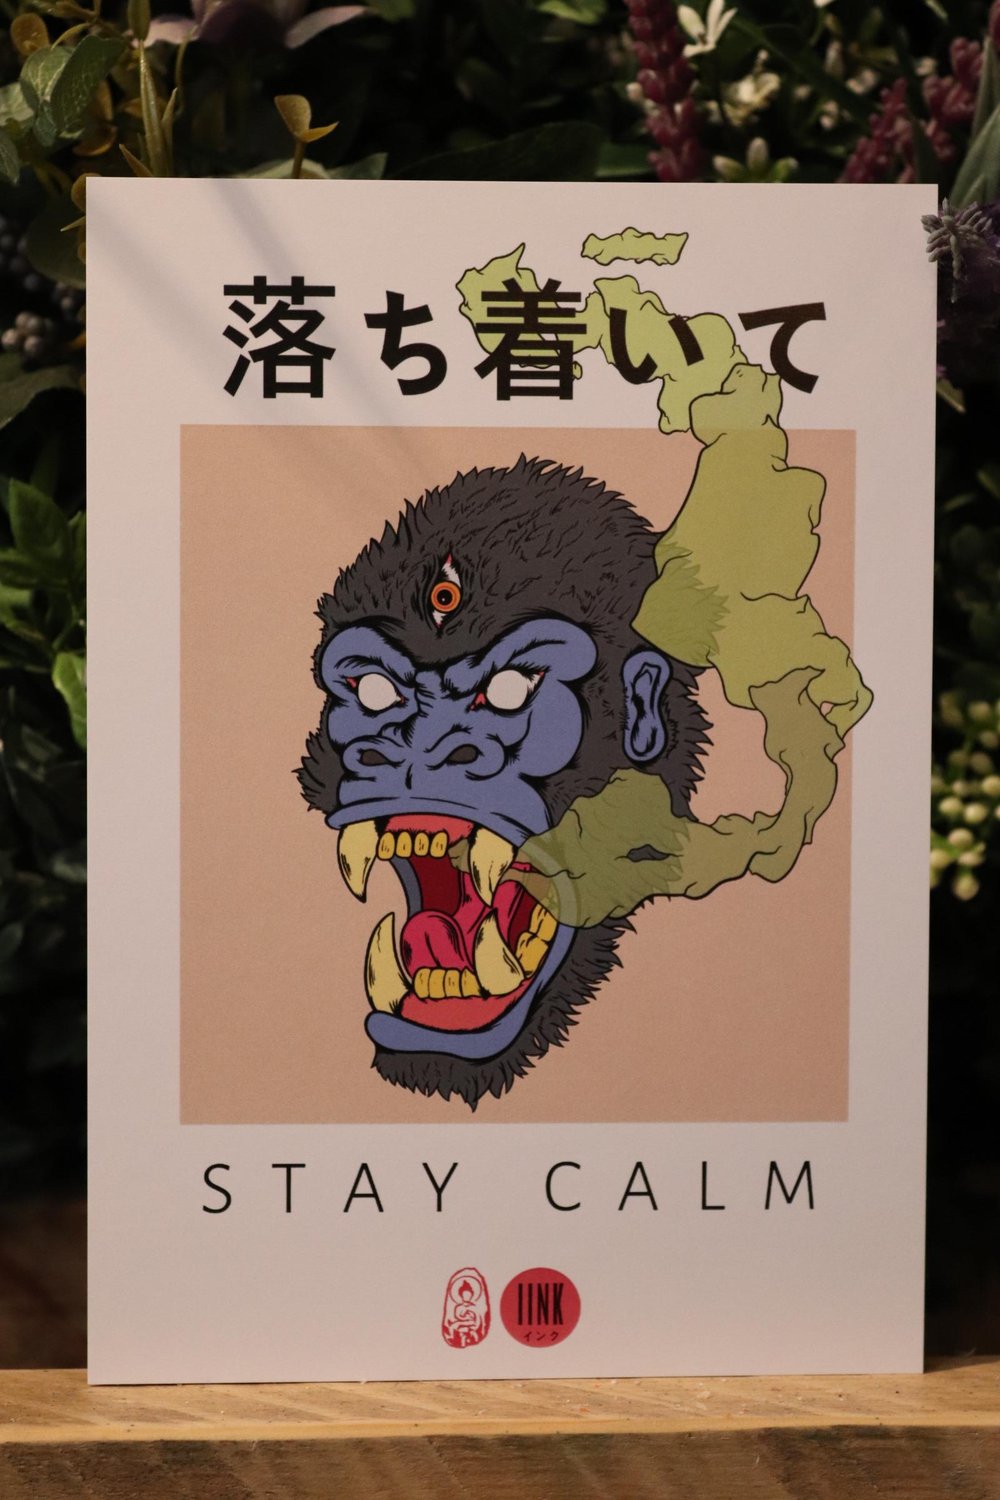 Stay calm gorilla print.